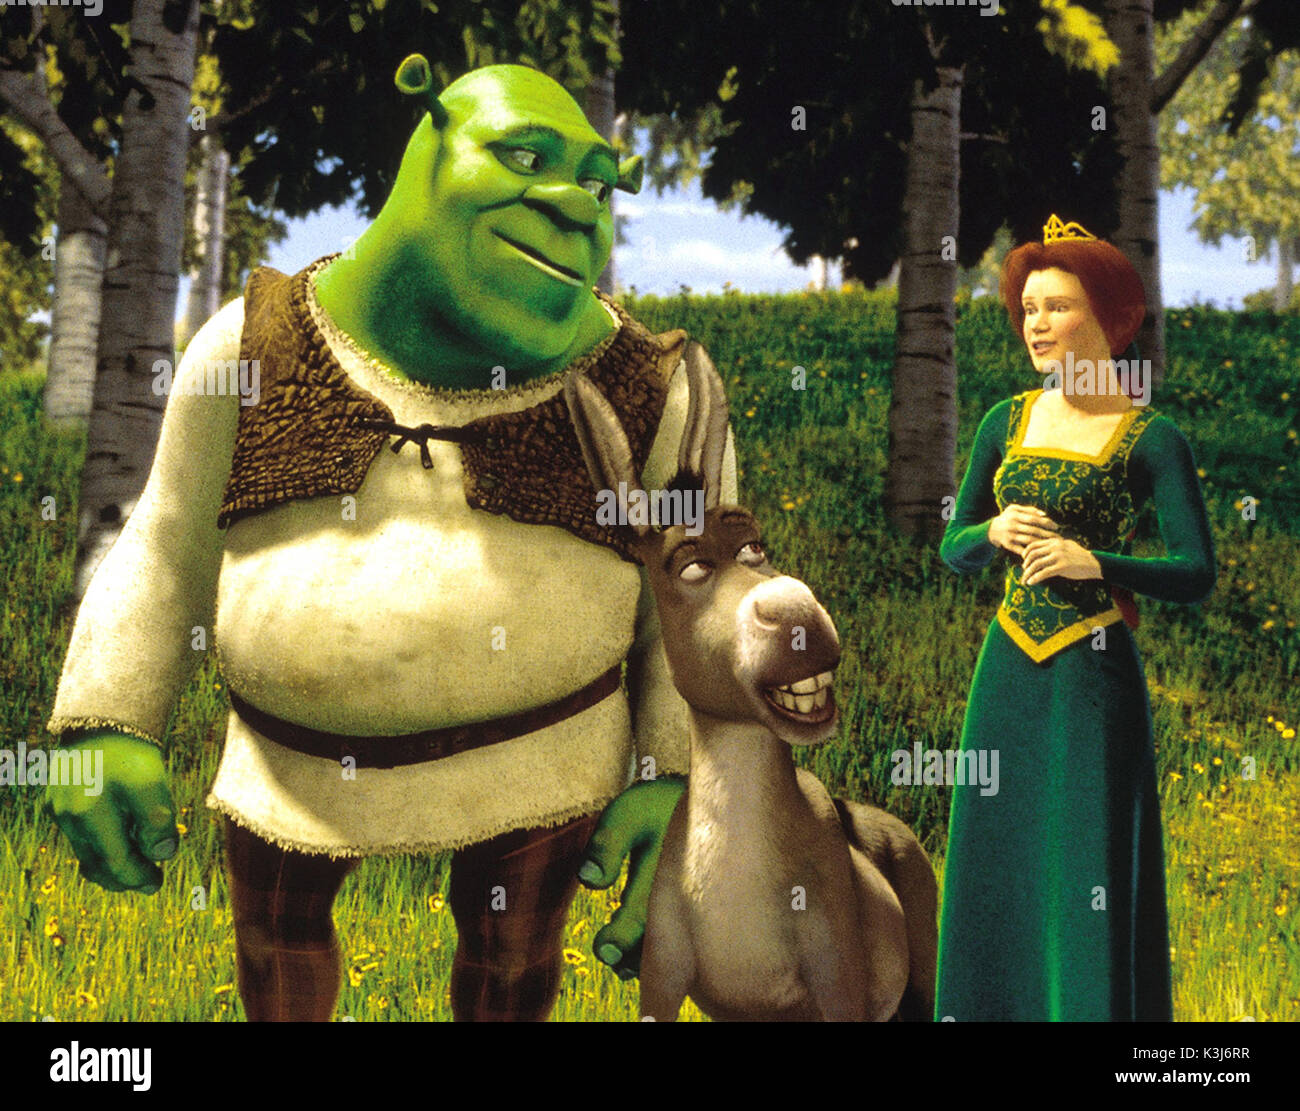 Shrek Shrek Donkey Princess Fiona Shrek L R Mike Meyers